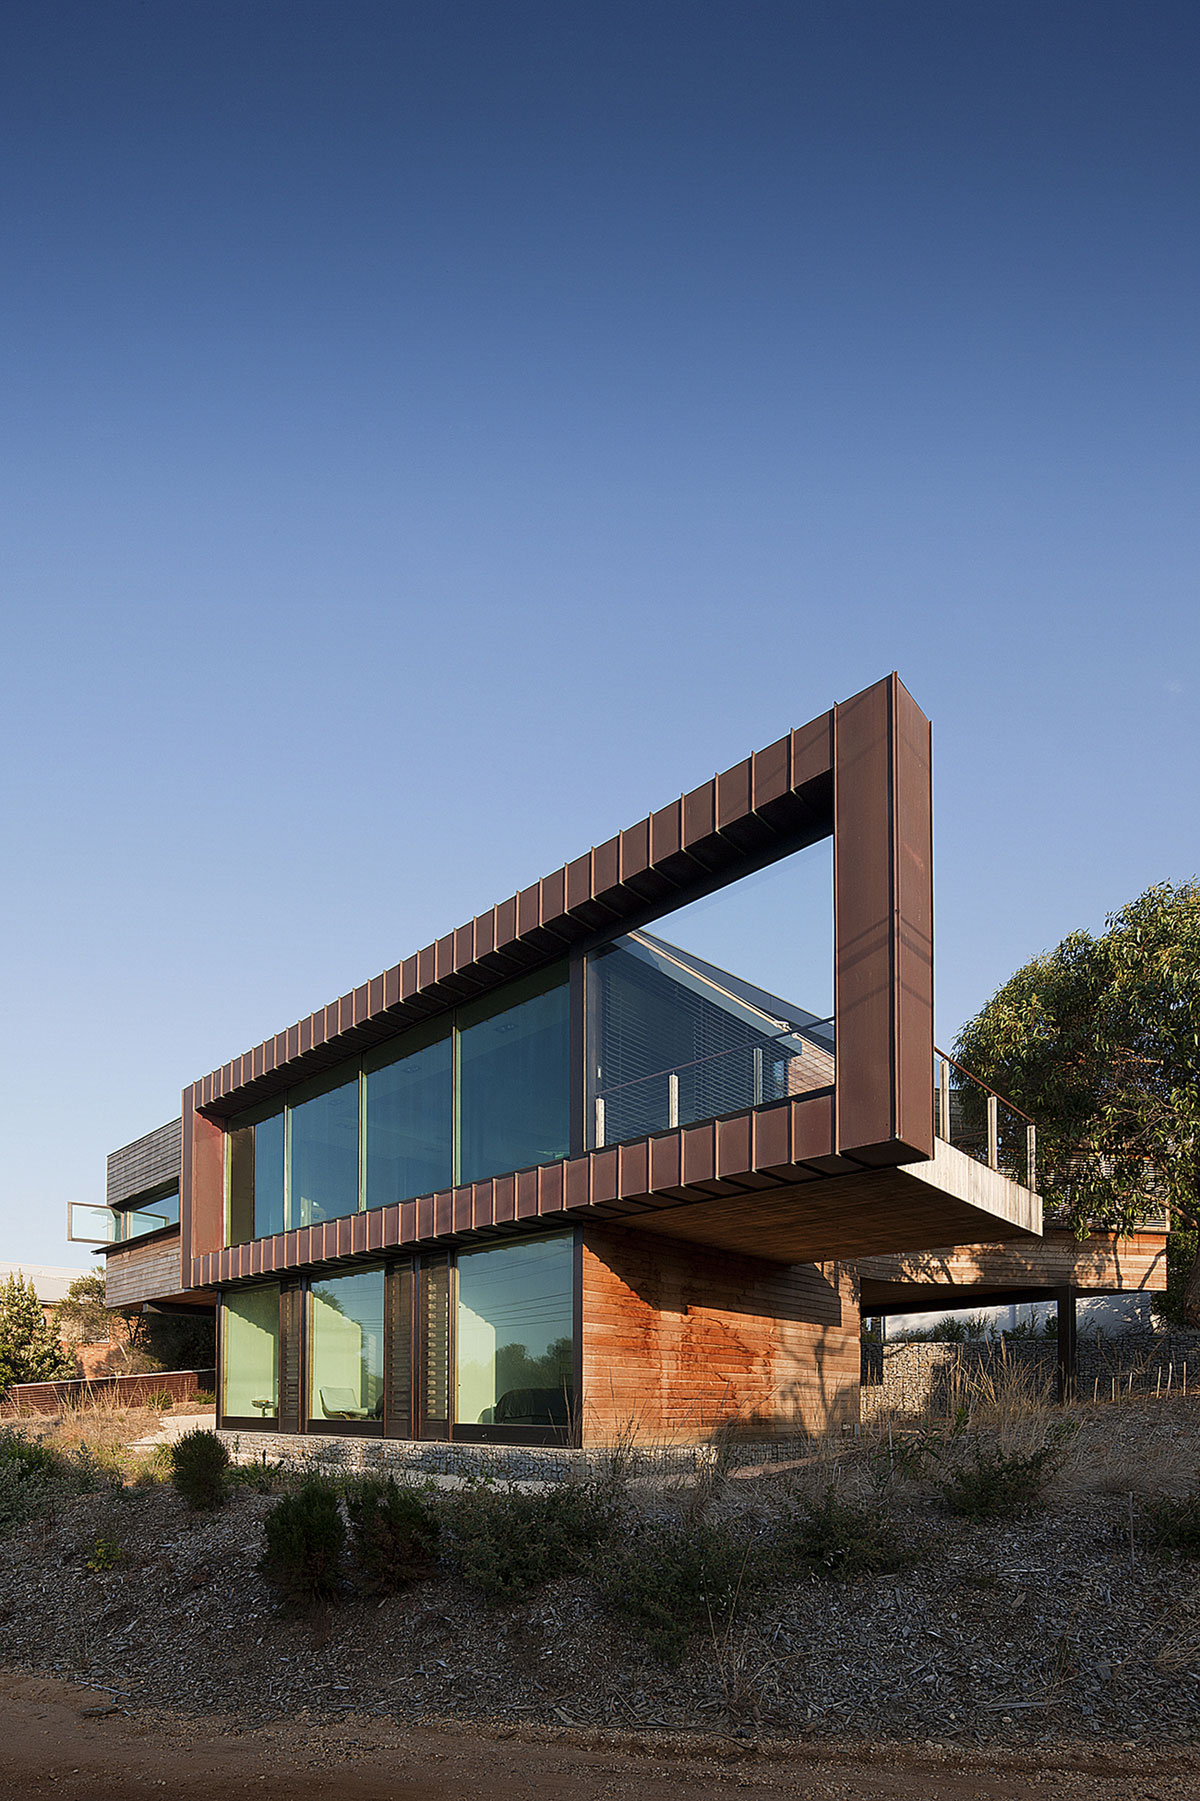 Причудливая конструкция великолепной виллы melba от seeley architects, энгли, австралия